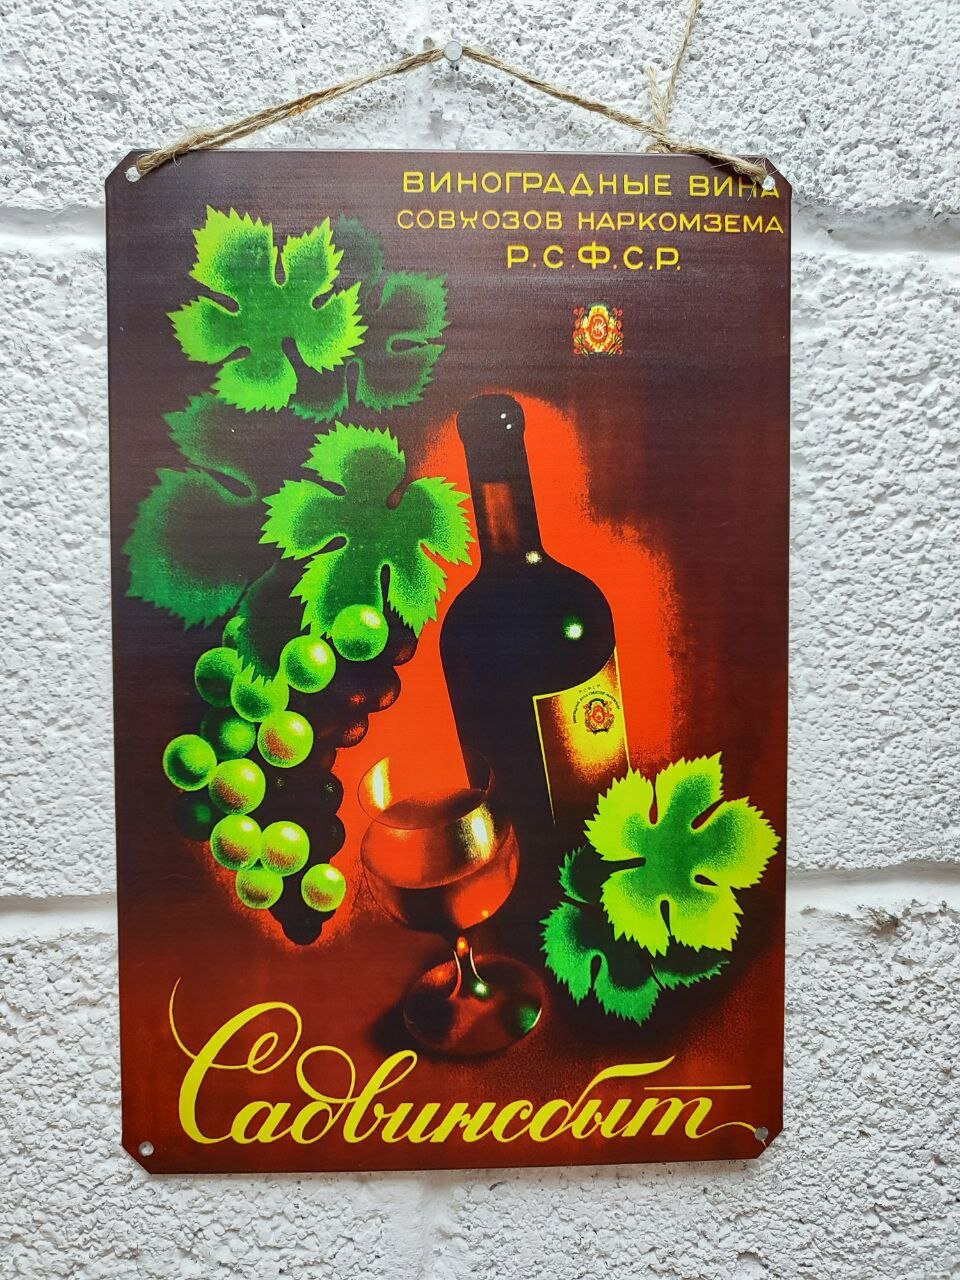 Виноградные вина, советская реклама постер 20 на 30 см, шнур-подвес в подарок